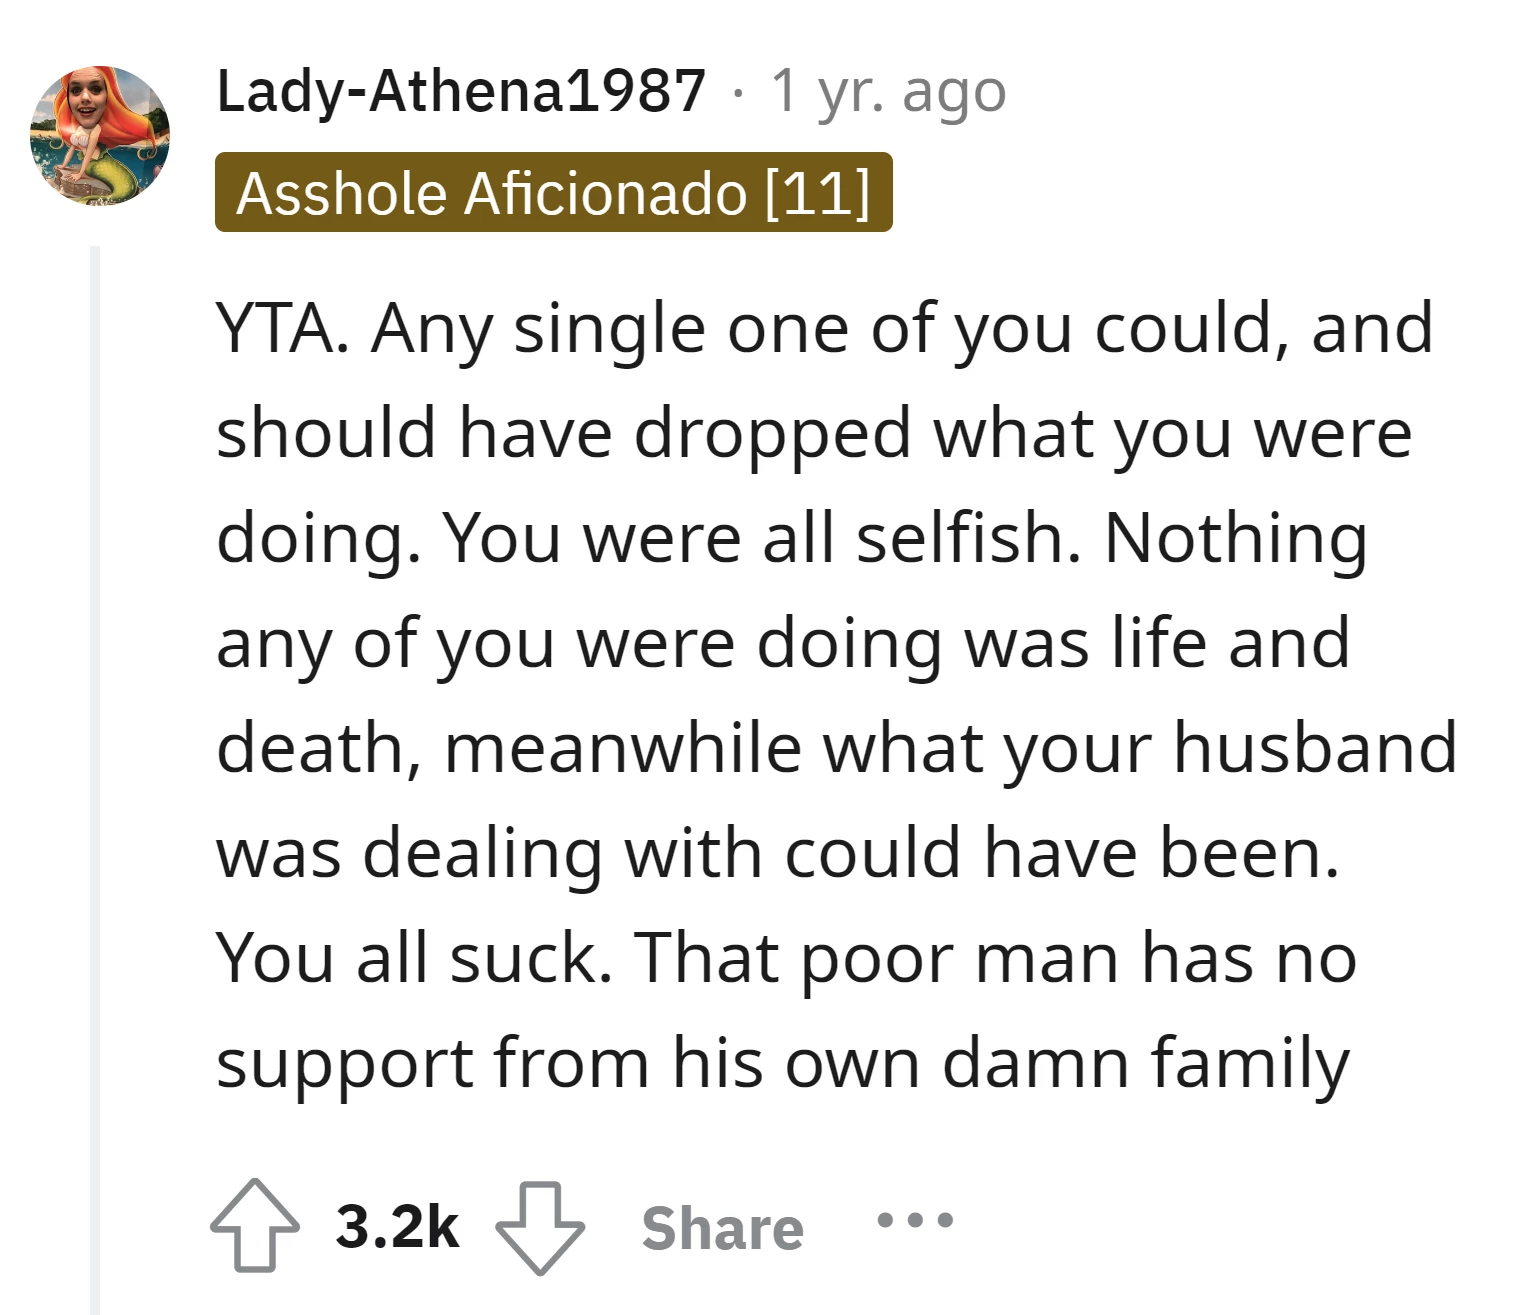 Lady-Athena1987's comment